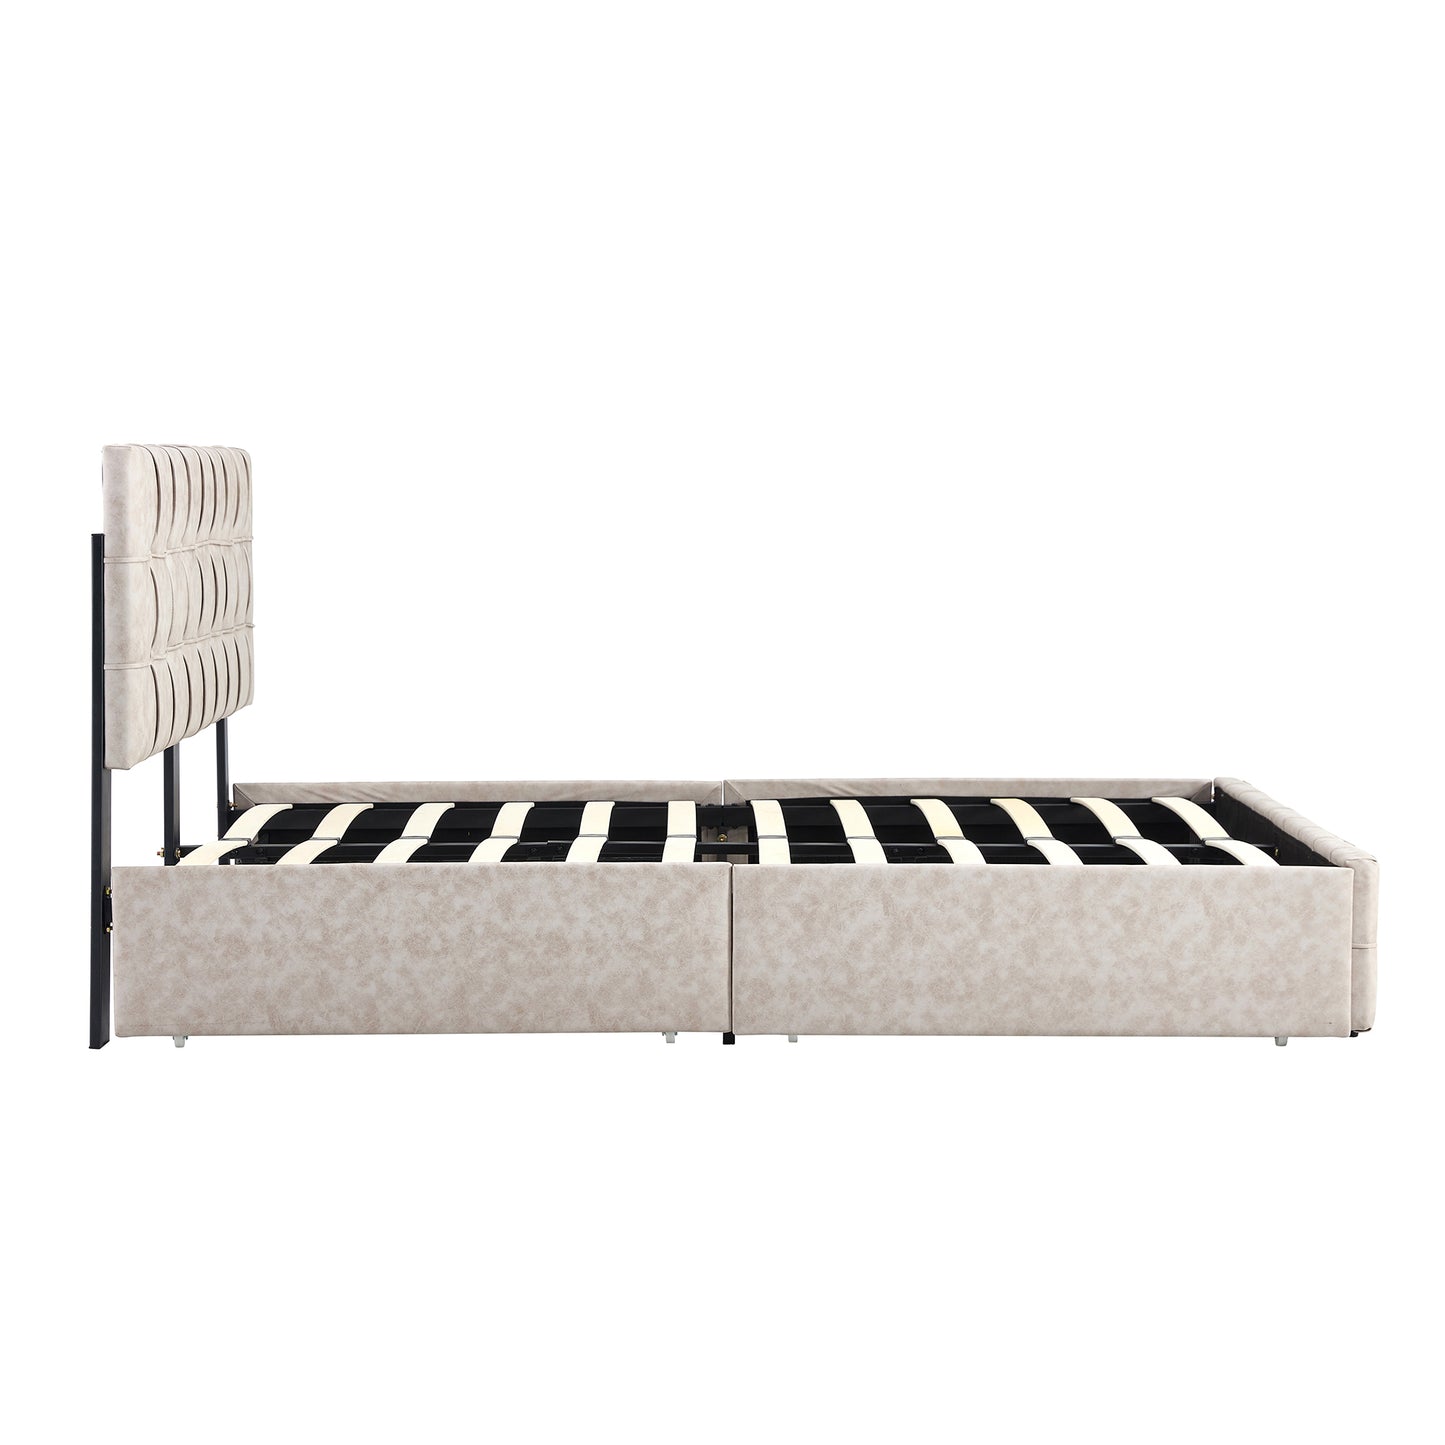 Marco de cama con plataforma tapizada de tamaño completo, color beige, con cabecera ajustable y almacenamiento de 4 cajones